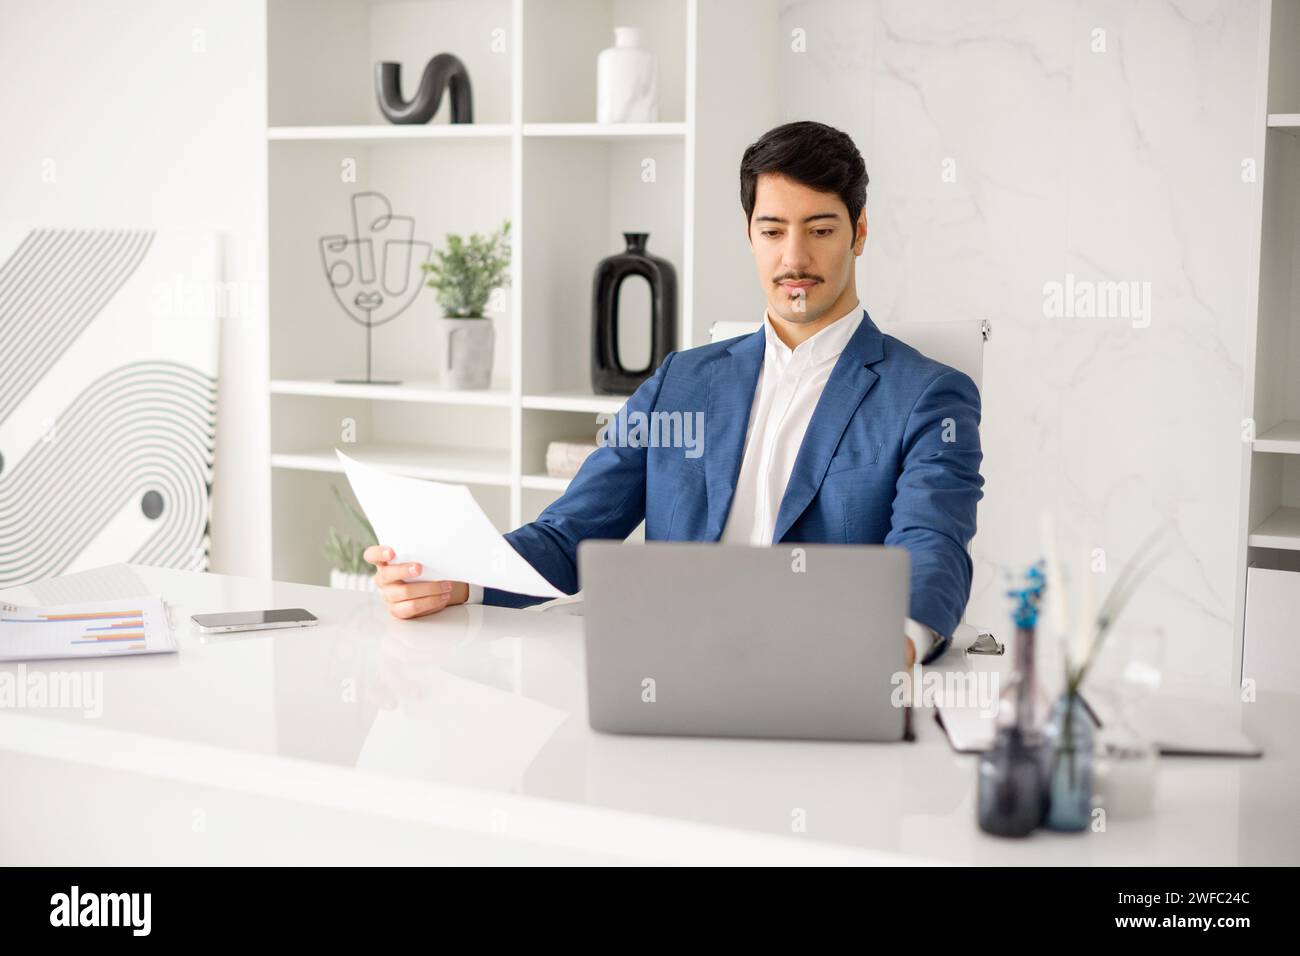 Ein fleißiger hispanischer Geschäftsmann ist in der Lektüre eines Papierdokuments vertieft, während er Aufgaben auf seinem Laptop verwaltet, was die Multitasking-Anforderungen aktueller Unternehmensrollen veranschaulicht Stockfoto